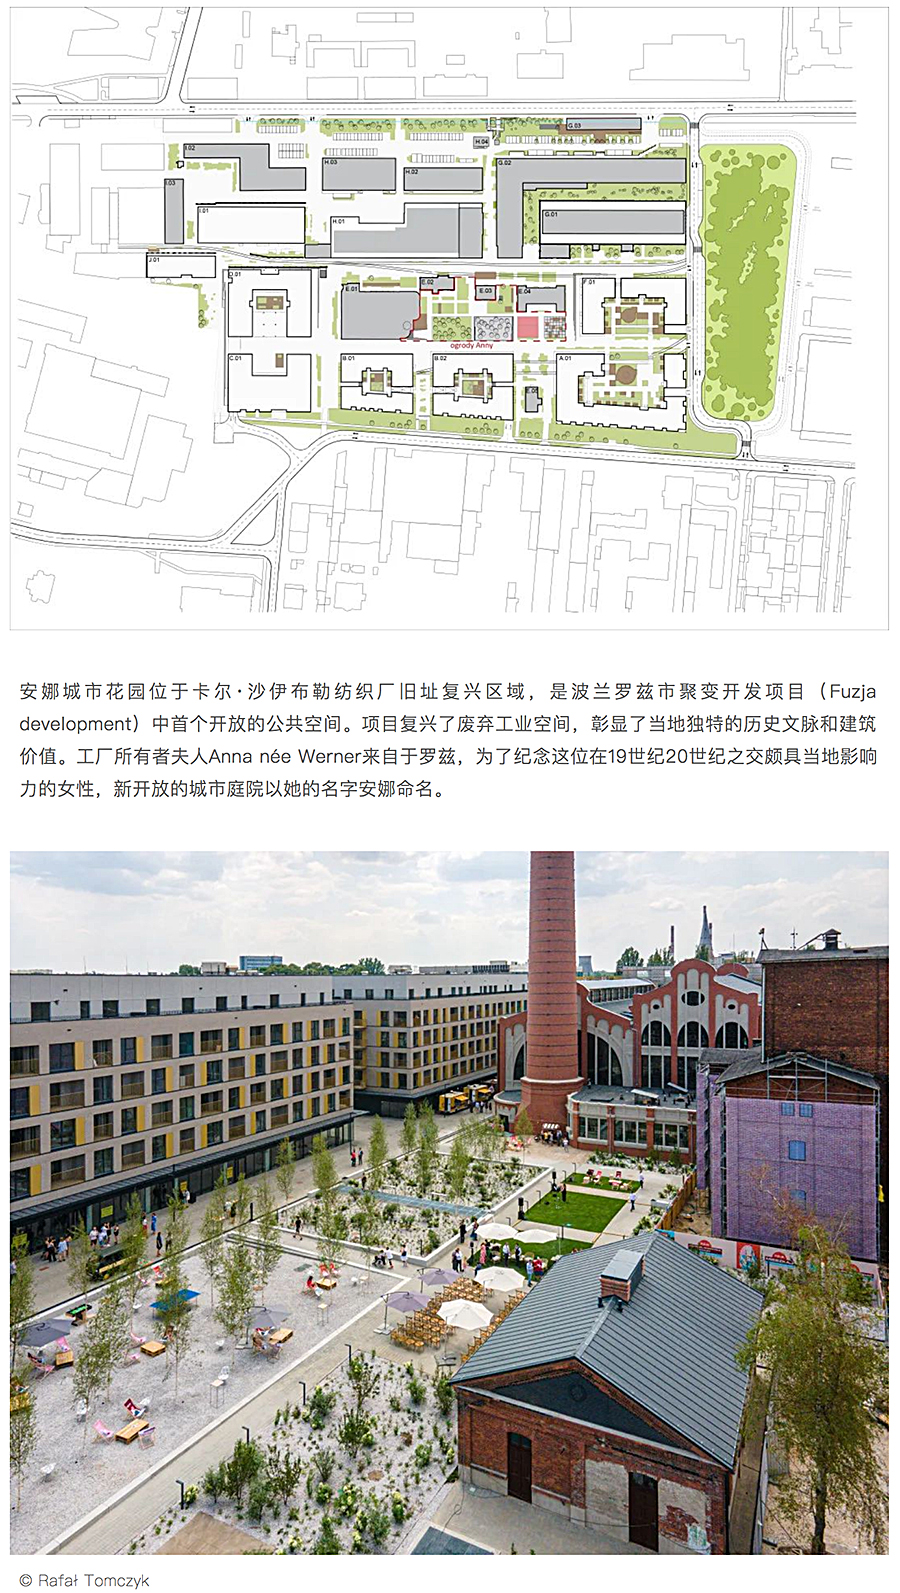 Renewal-Zone：聚变-安娜城市花园︱波兰工业旧址的复兴开发_0002_图层-3.jpg